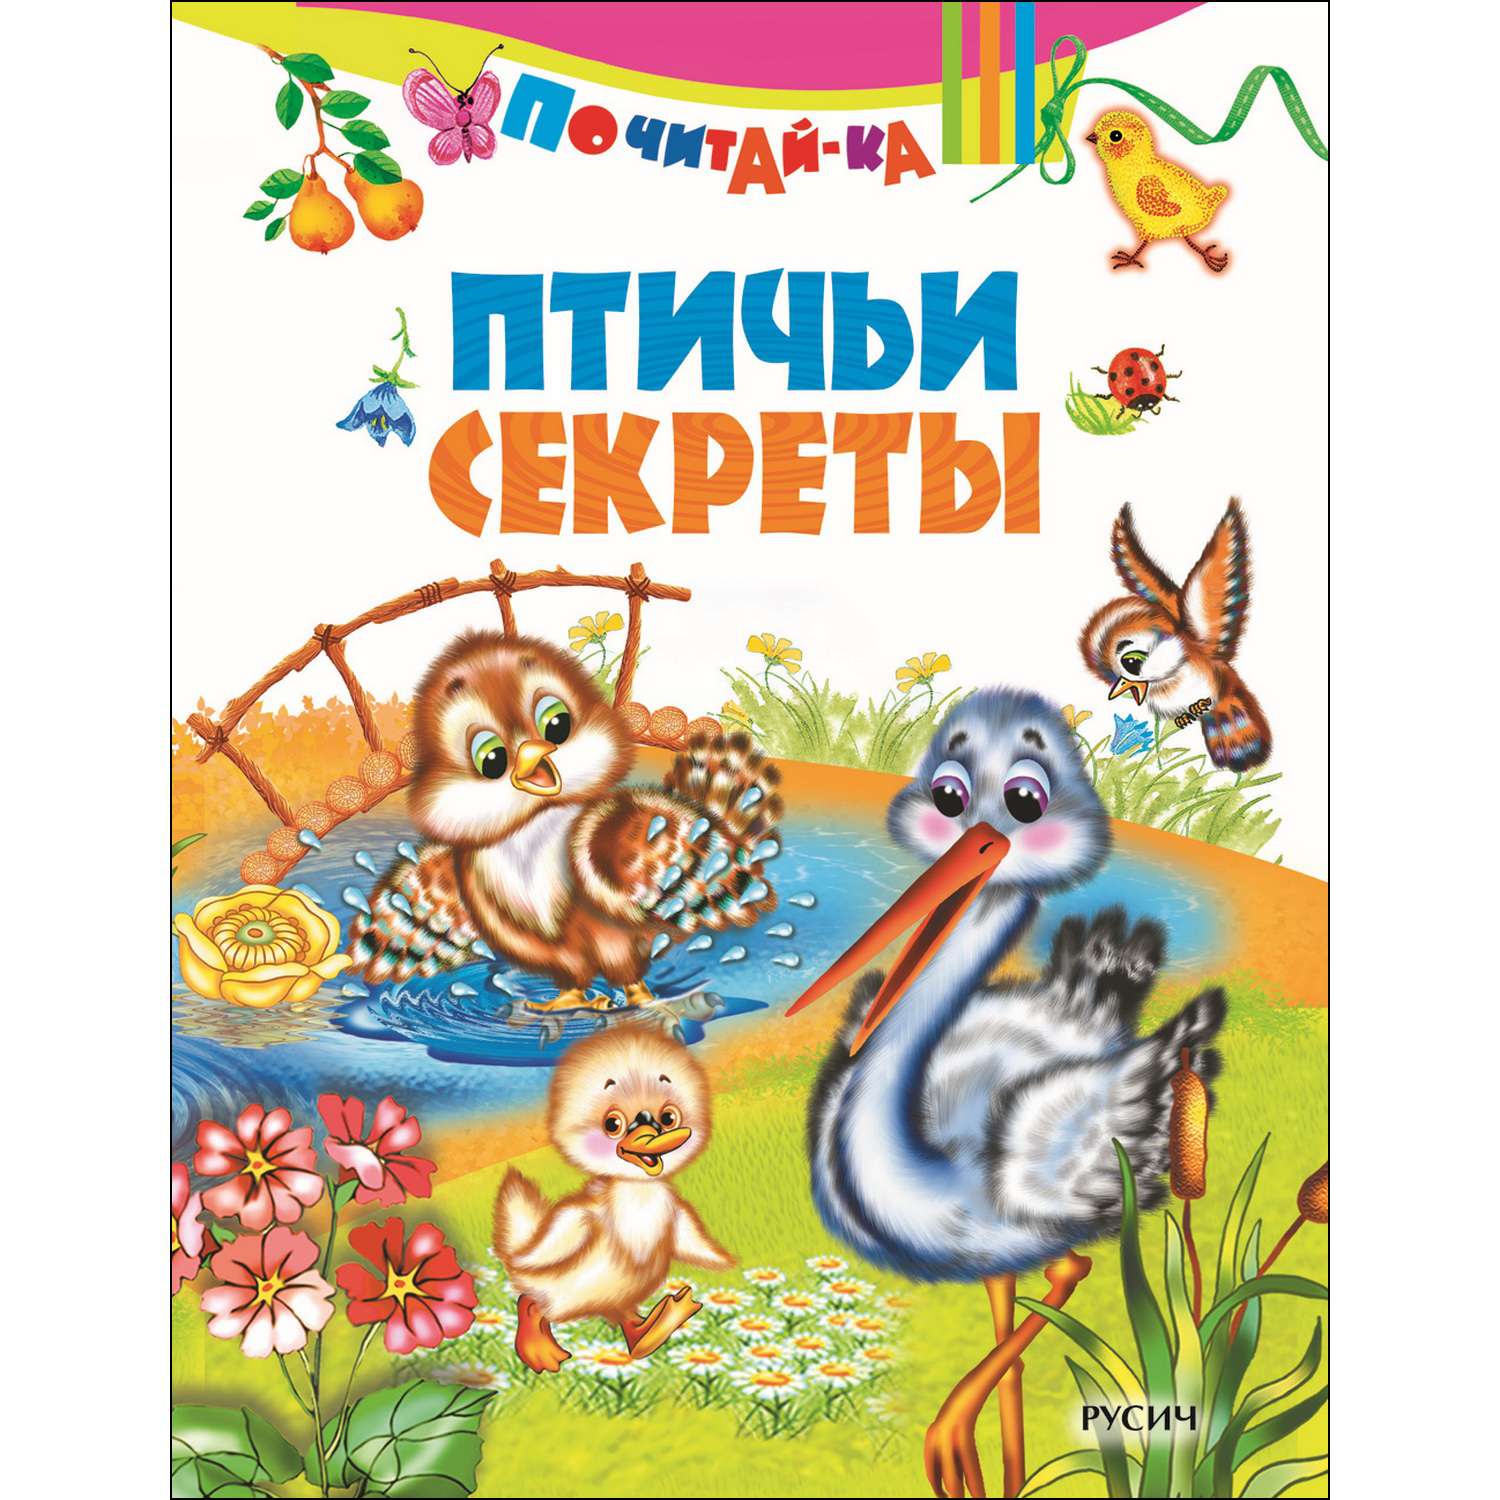 Книга Русич Птичьи секреты - фото 1